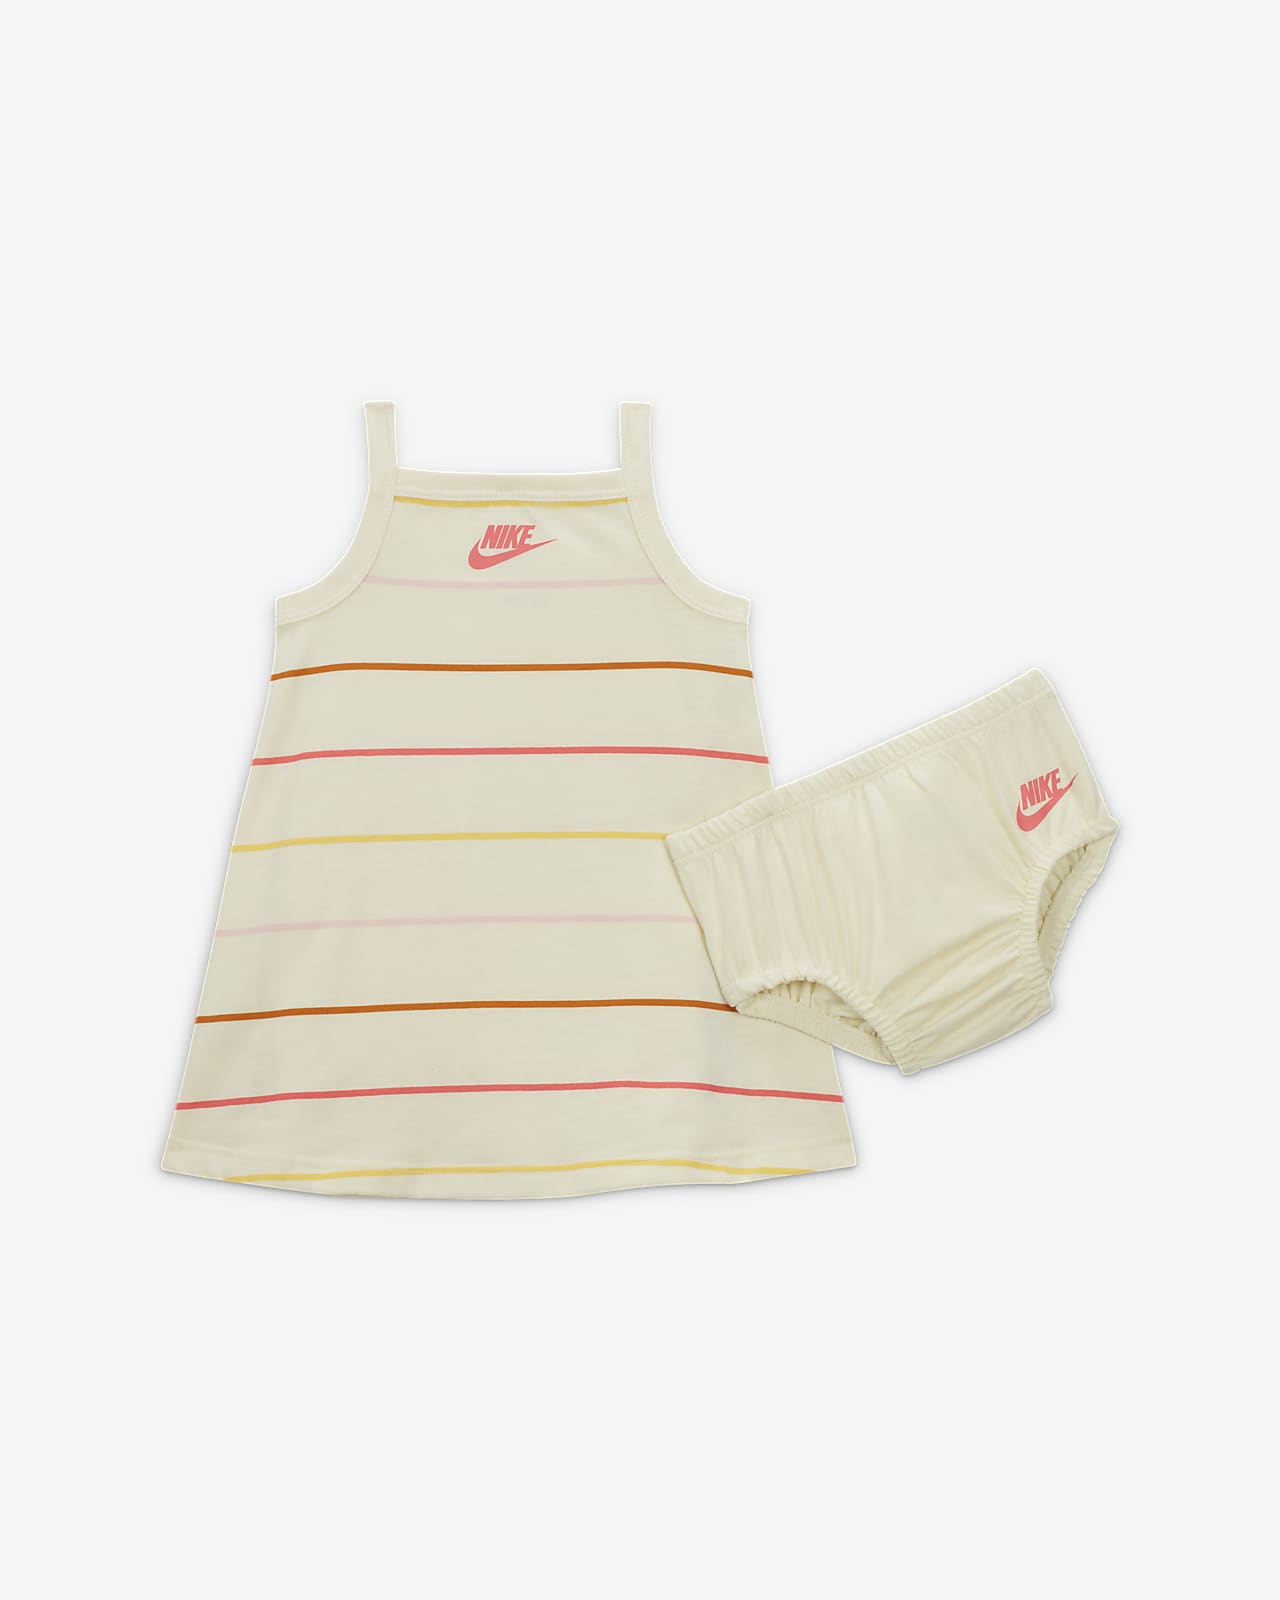 Šaty Nike „Let's Roll“ pro kojence